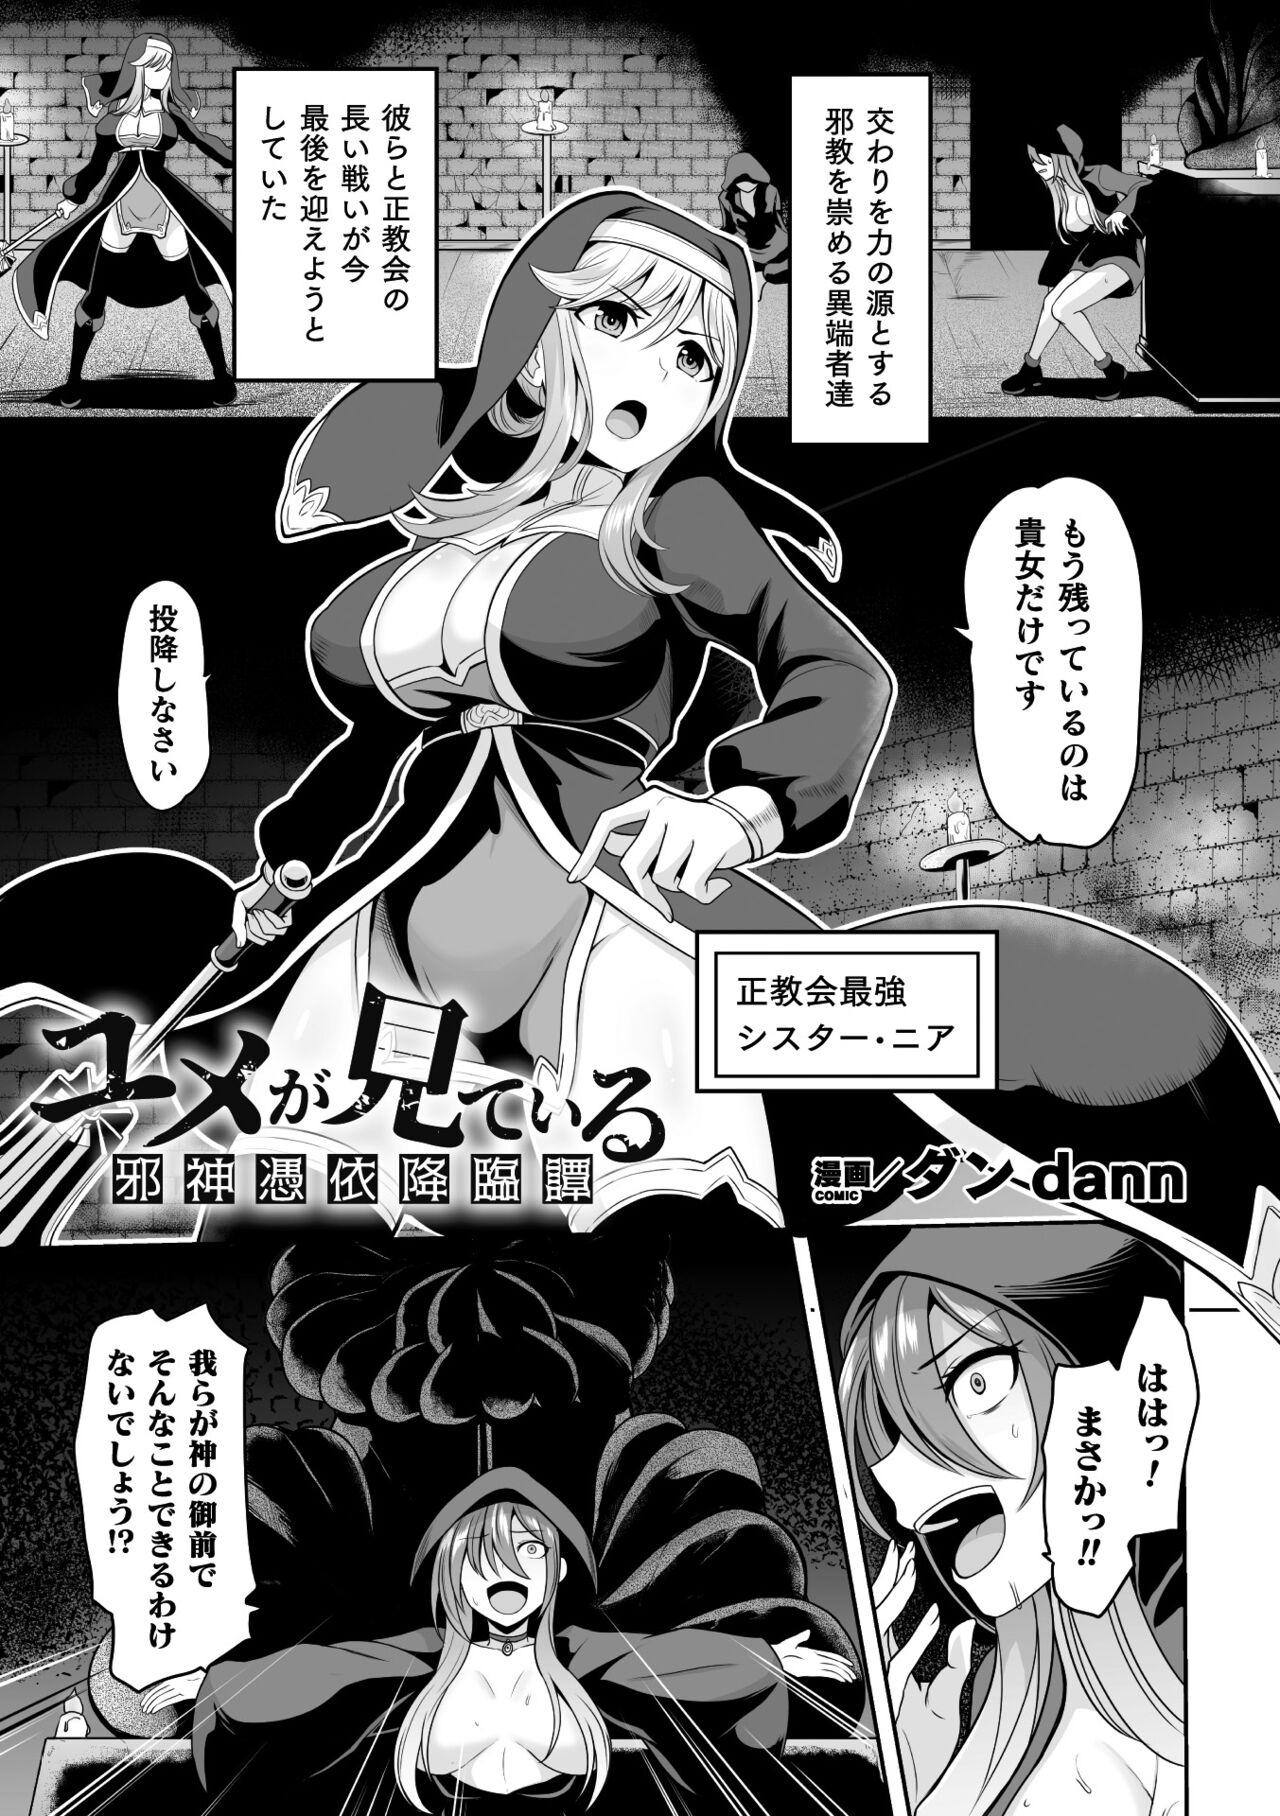 2D Comic Magazine Hyoui de! Saimin de! Heroine Inranka Daisakusen Vol. 2 2